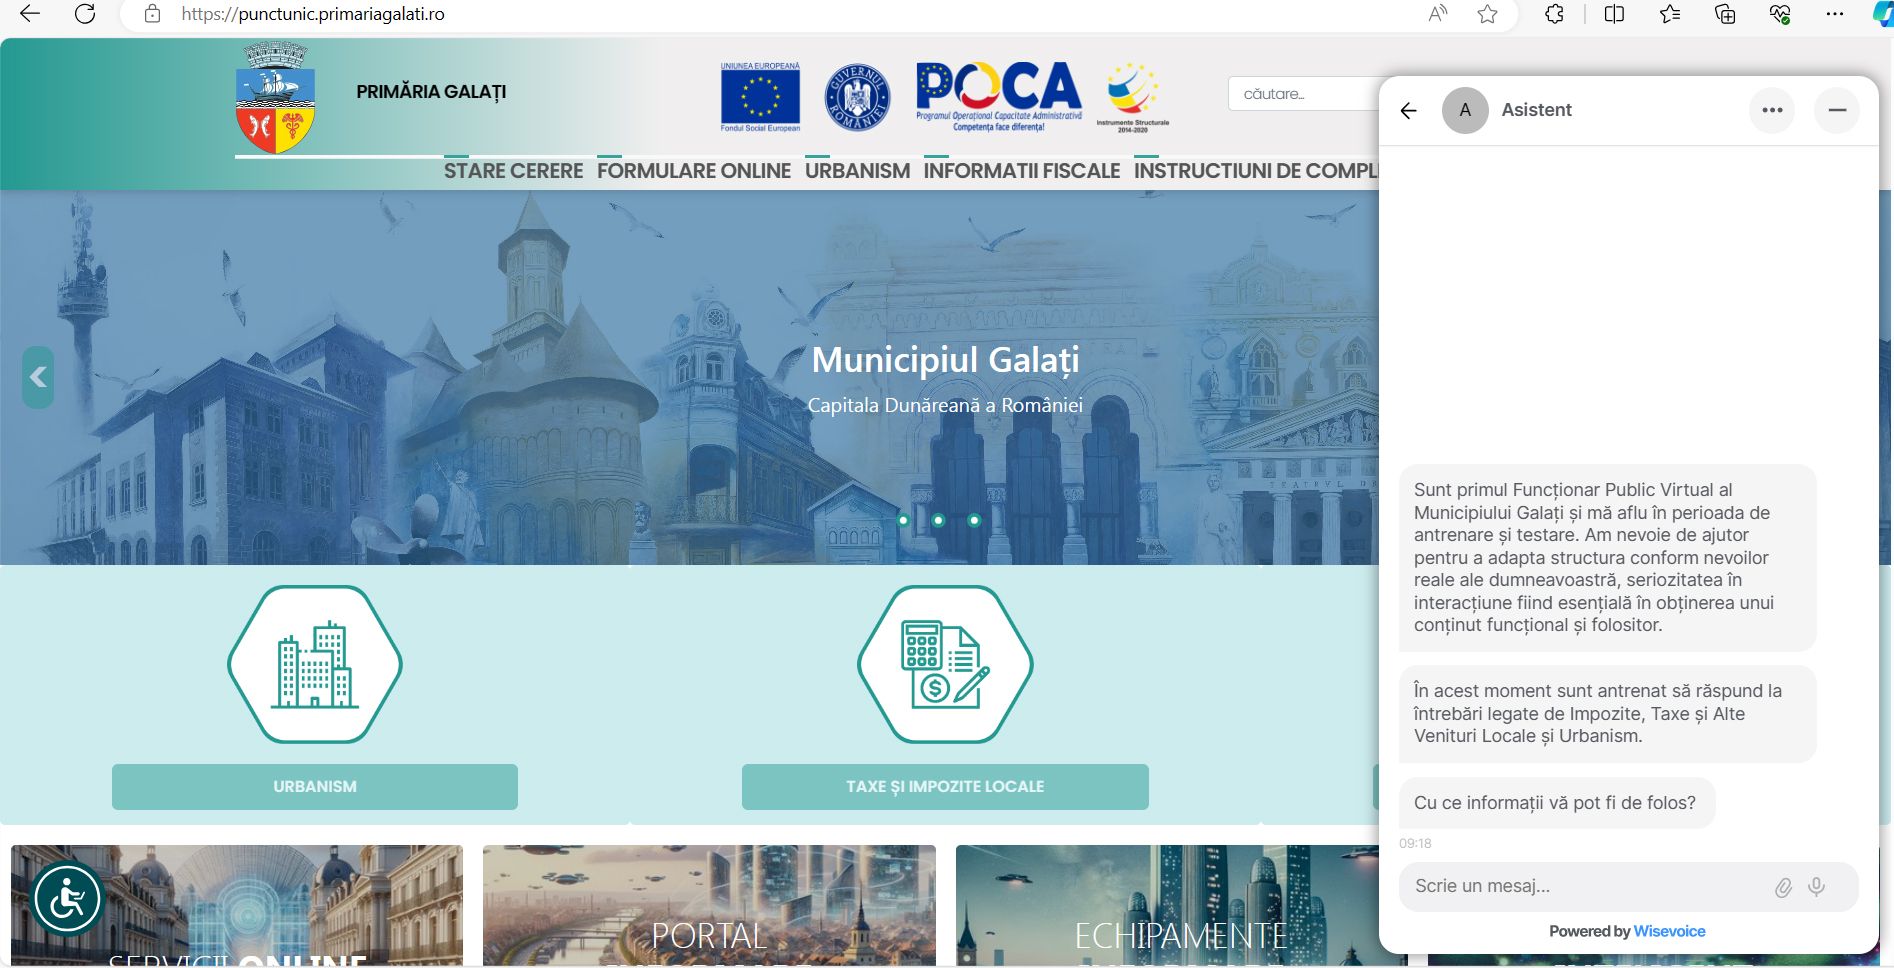 Funcționar public virtual la Primăria Galați